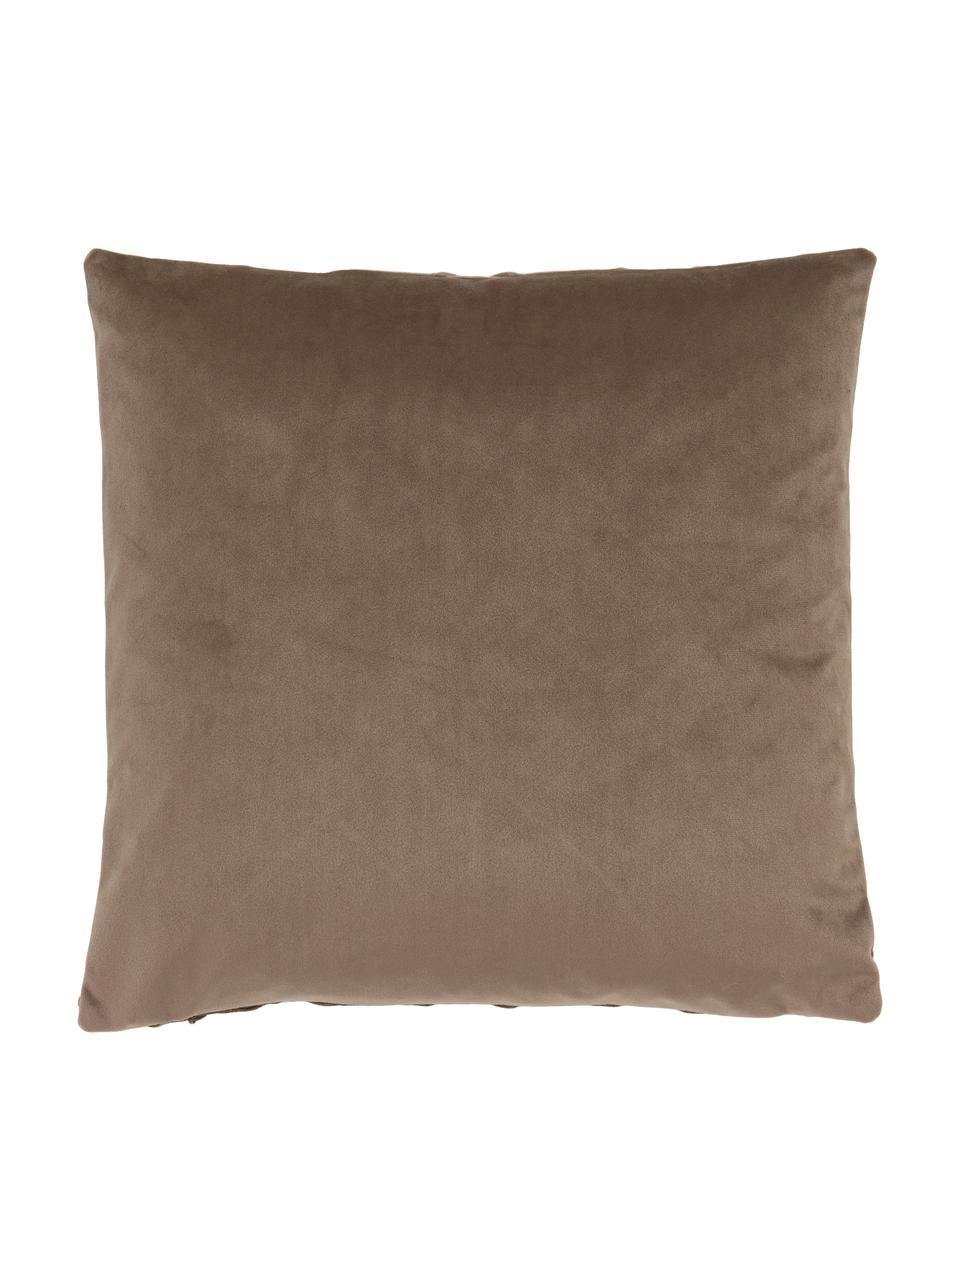 Fluwelen kussenhoes Luka in bruin met structuur-ruitpatroon, Fluweel (100% polyester), Bruin, B 40 x L 40 cm